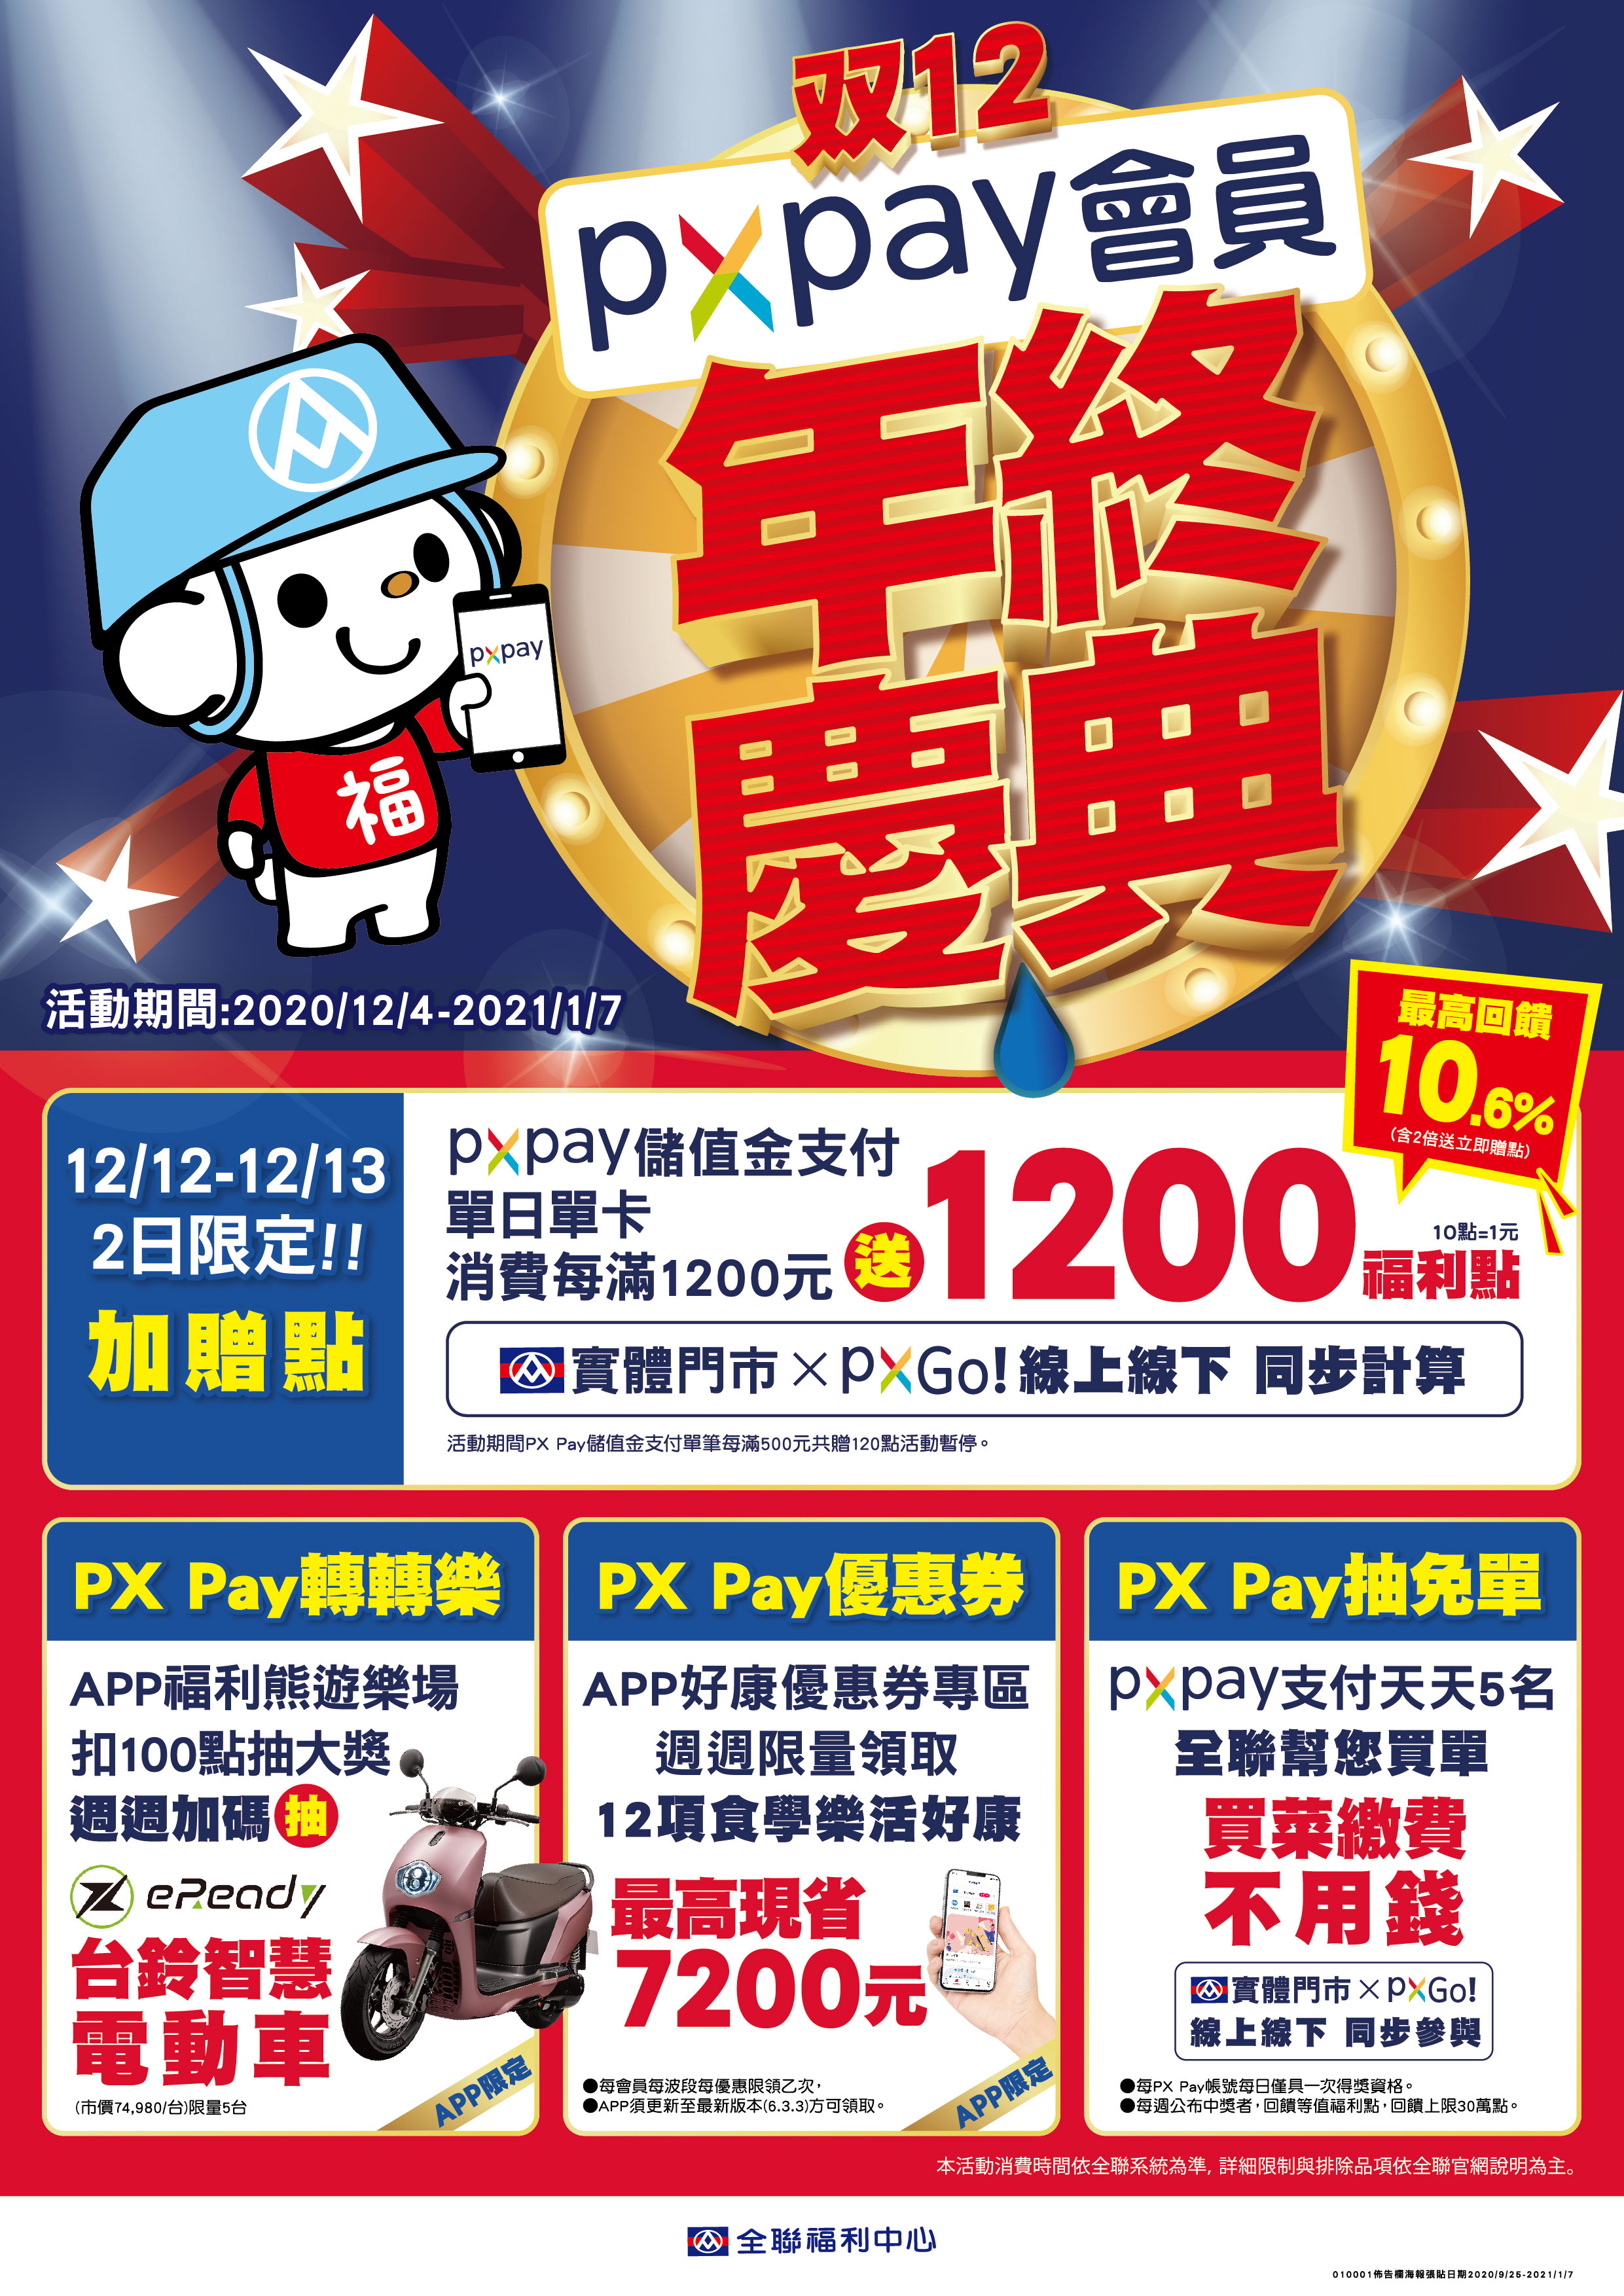 自12月4日起至2021年3月11日，可在全台灣1000多家全聯門市可購買eReadyFun，並加贈10,000點福利點數。(圖片來源/ eReady)